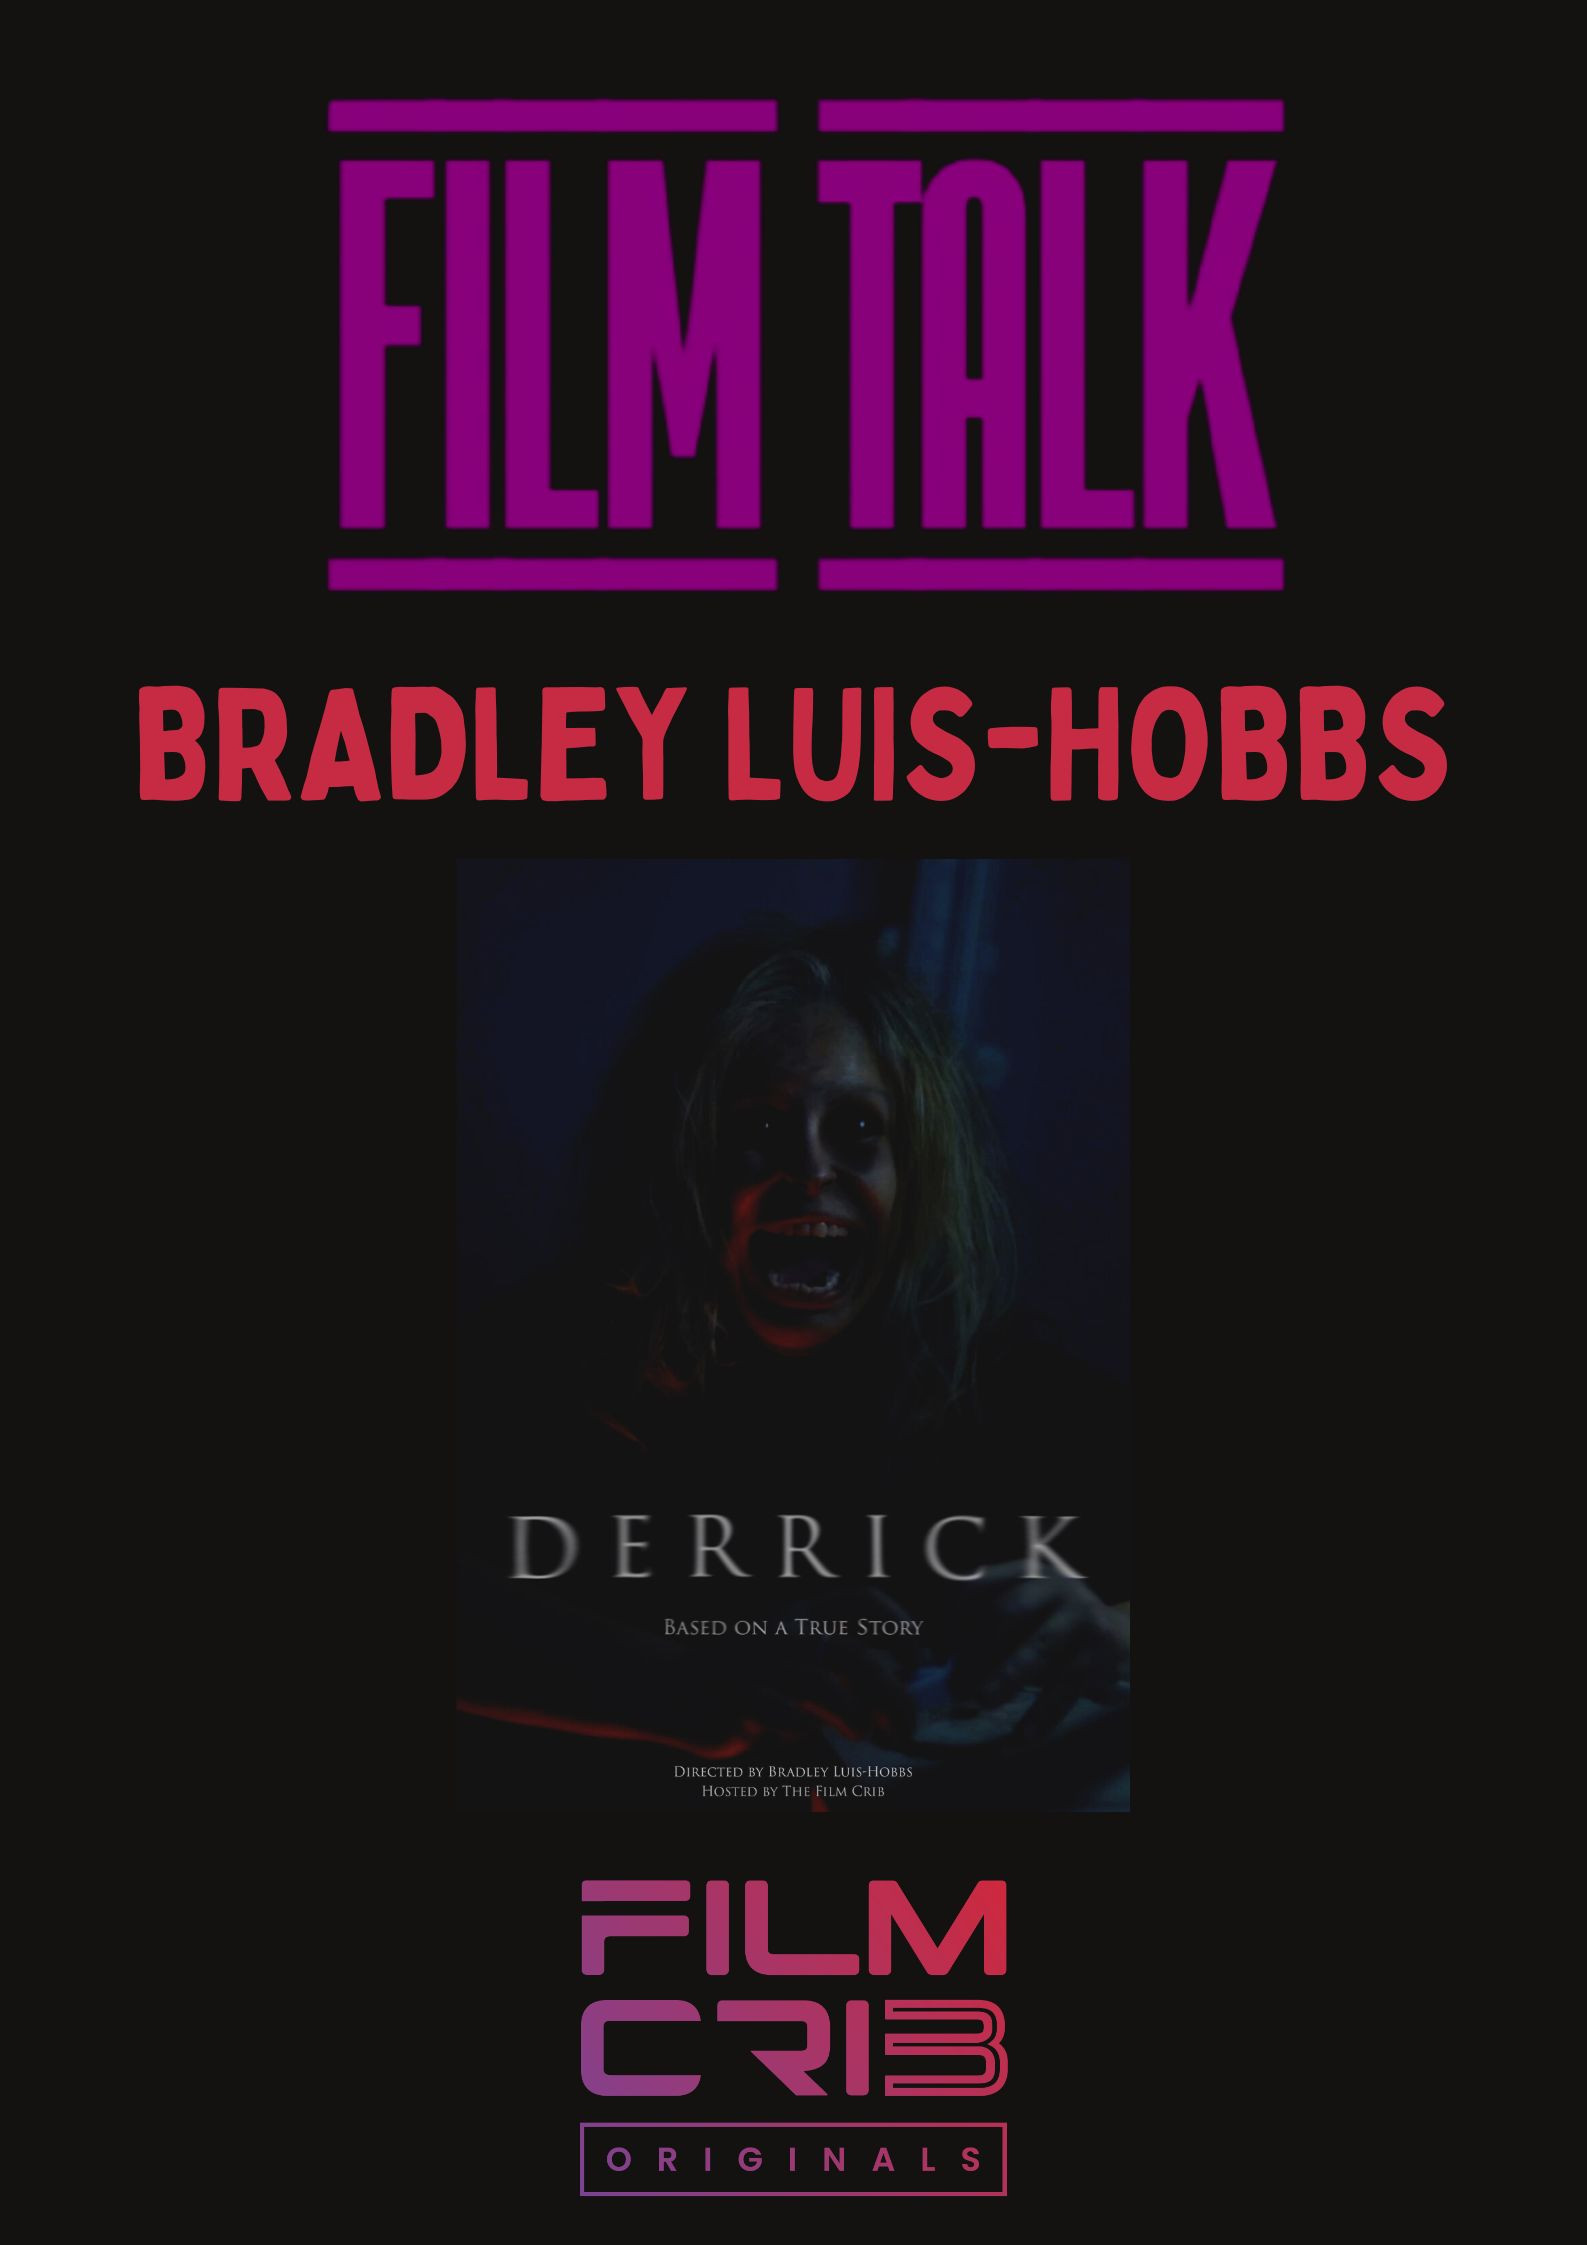 Film talk - Bradley Luis-Hobbs